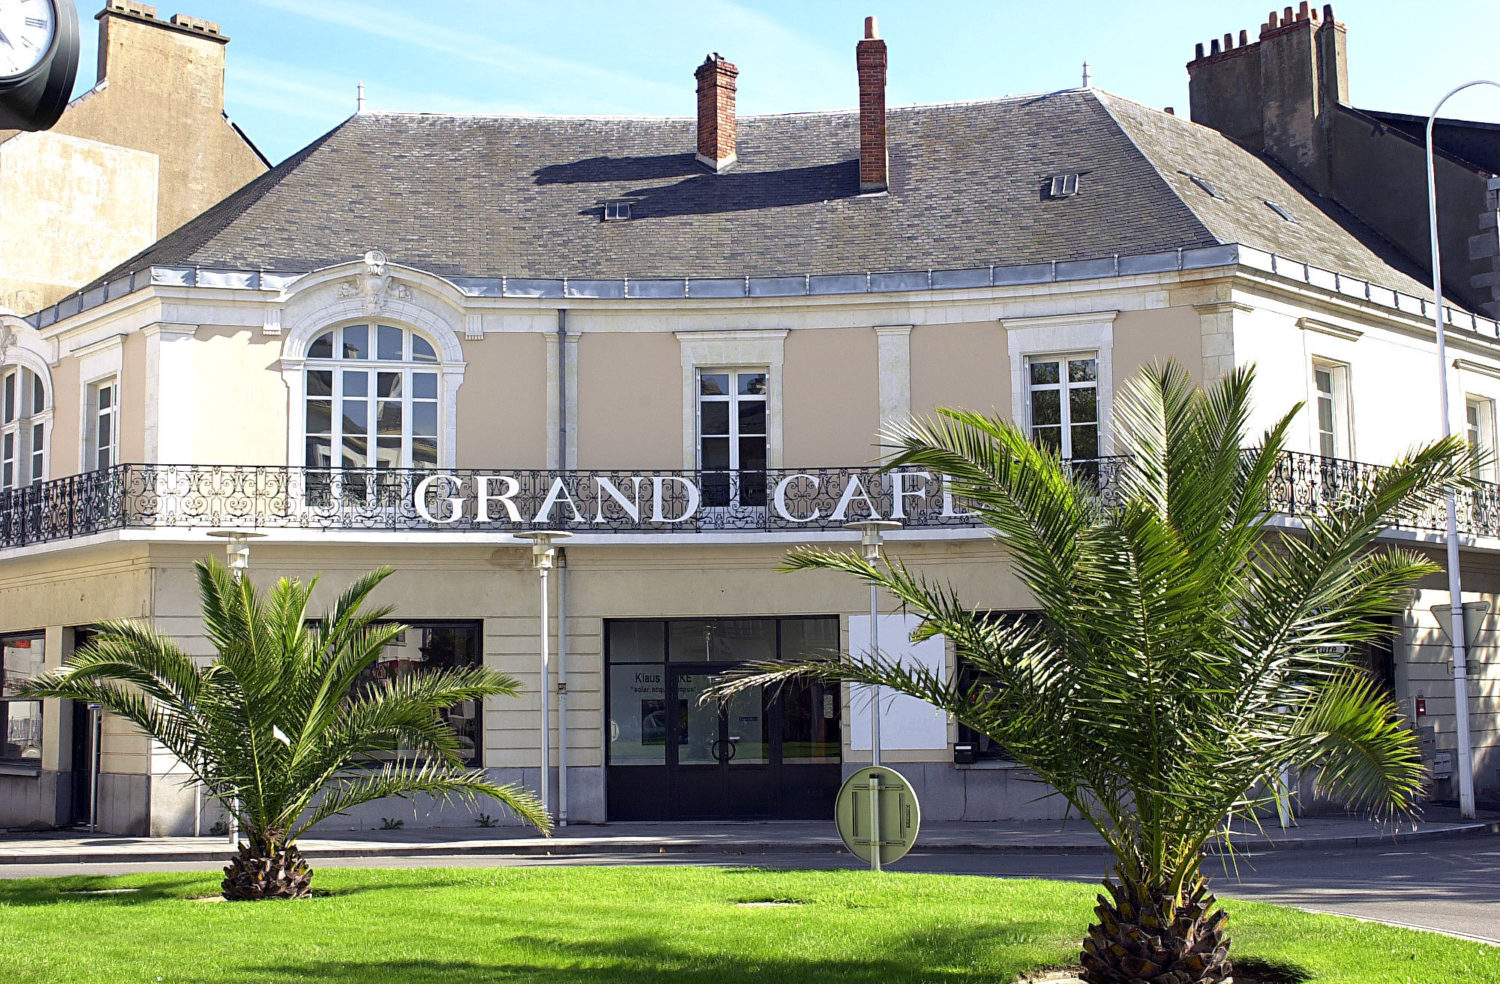 Offre d’emploi Assistant·e administratif·ve - Le Grand Café